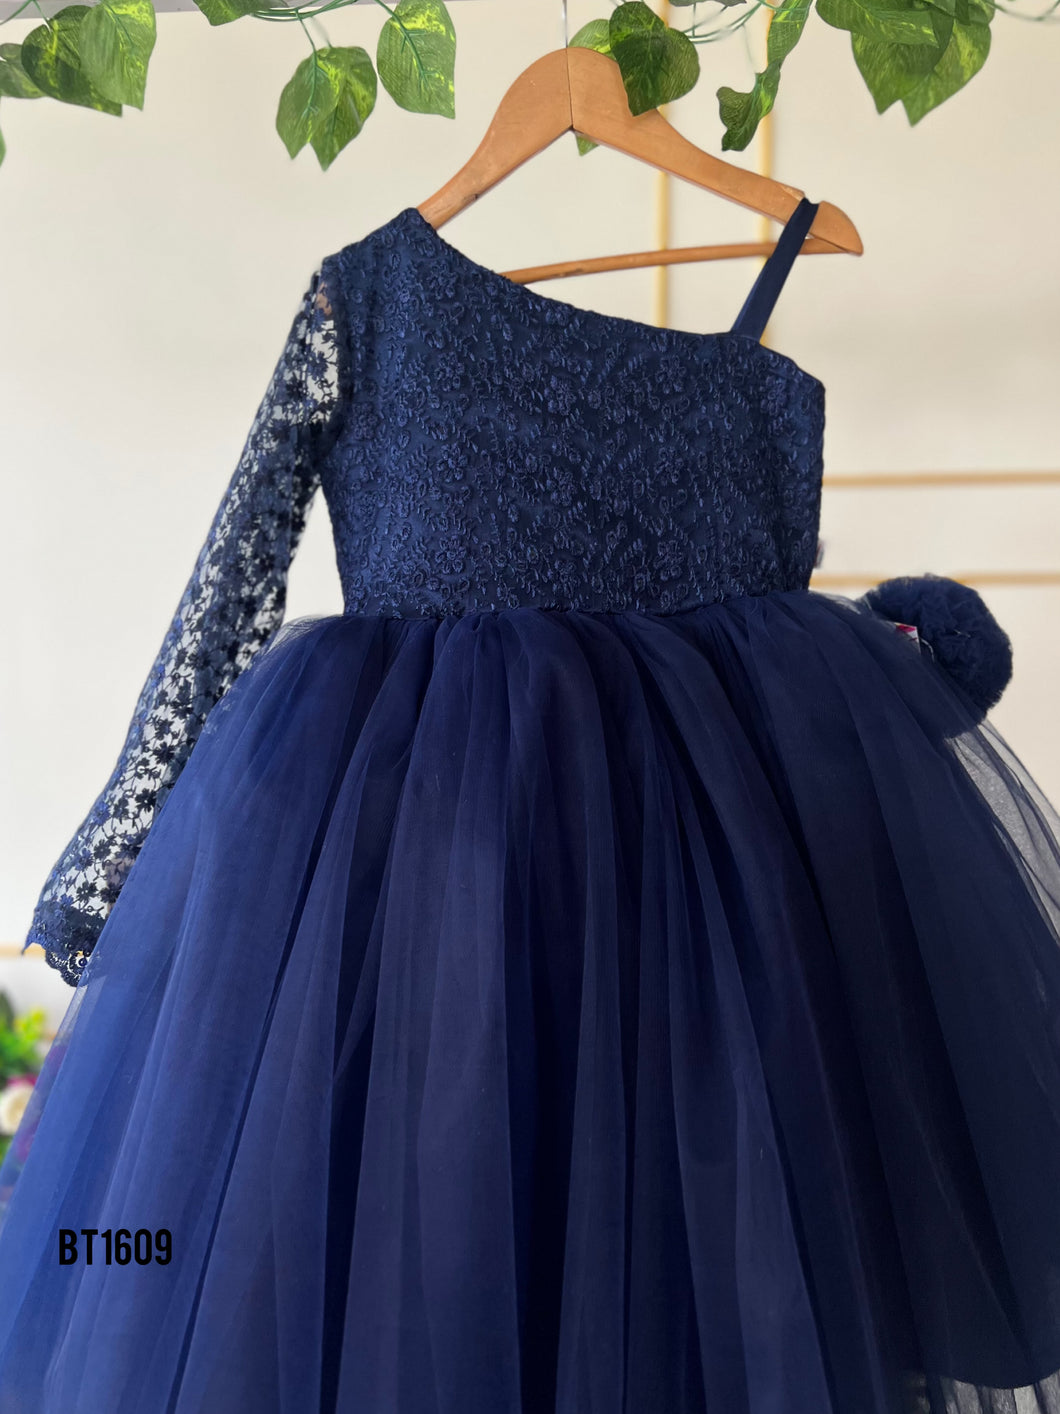 BT1609 Midnight Blue Elegance Gown